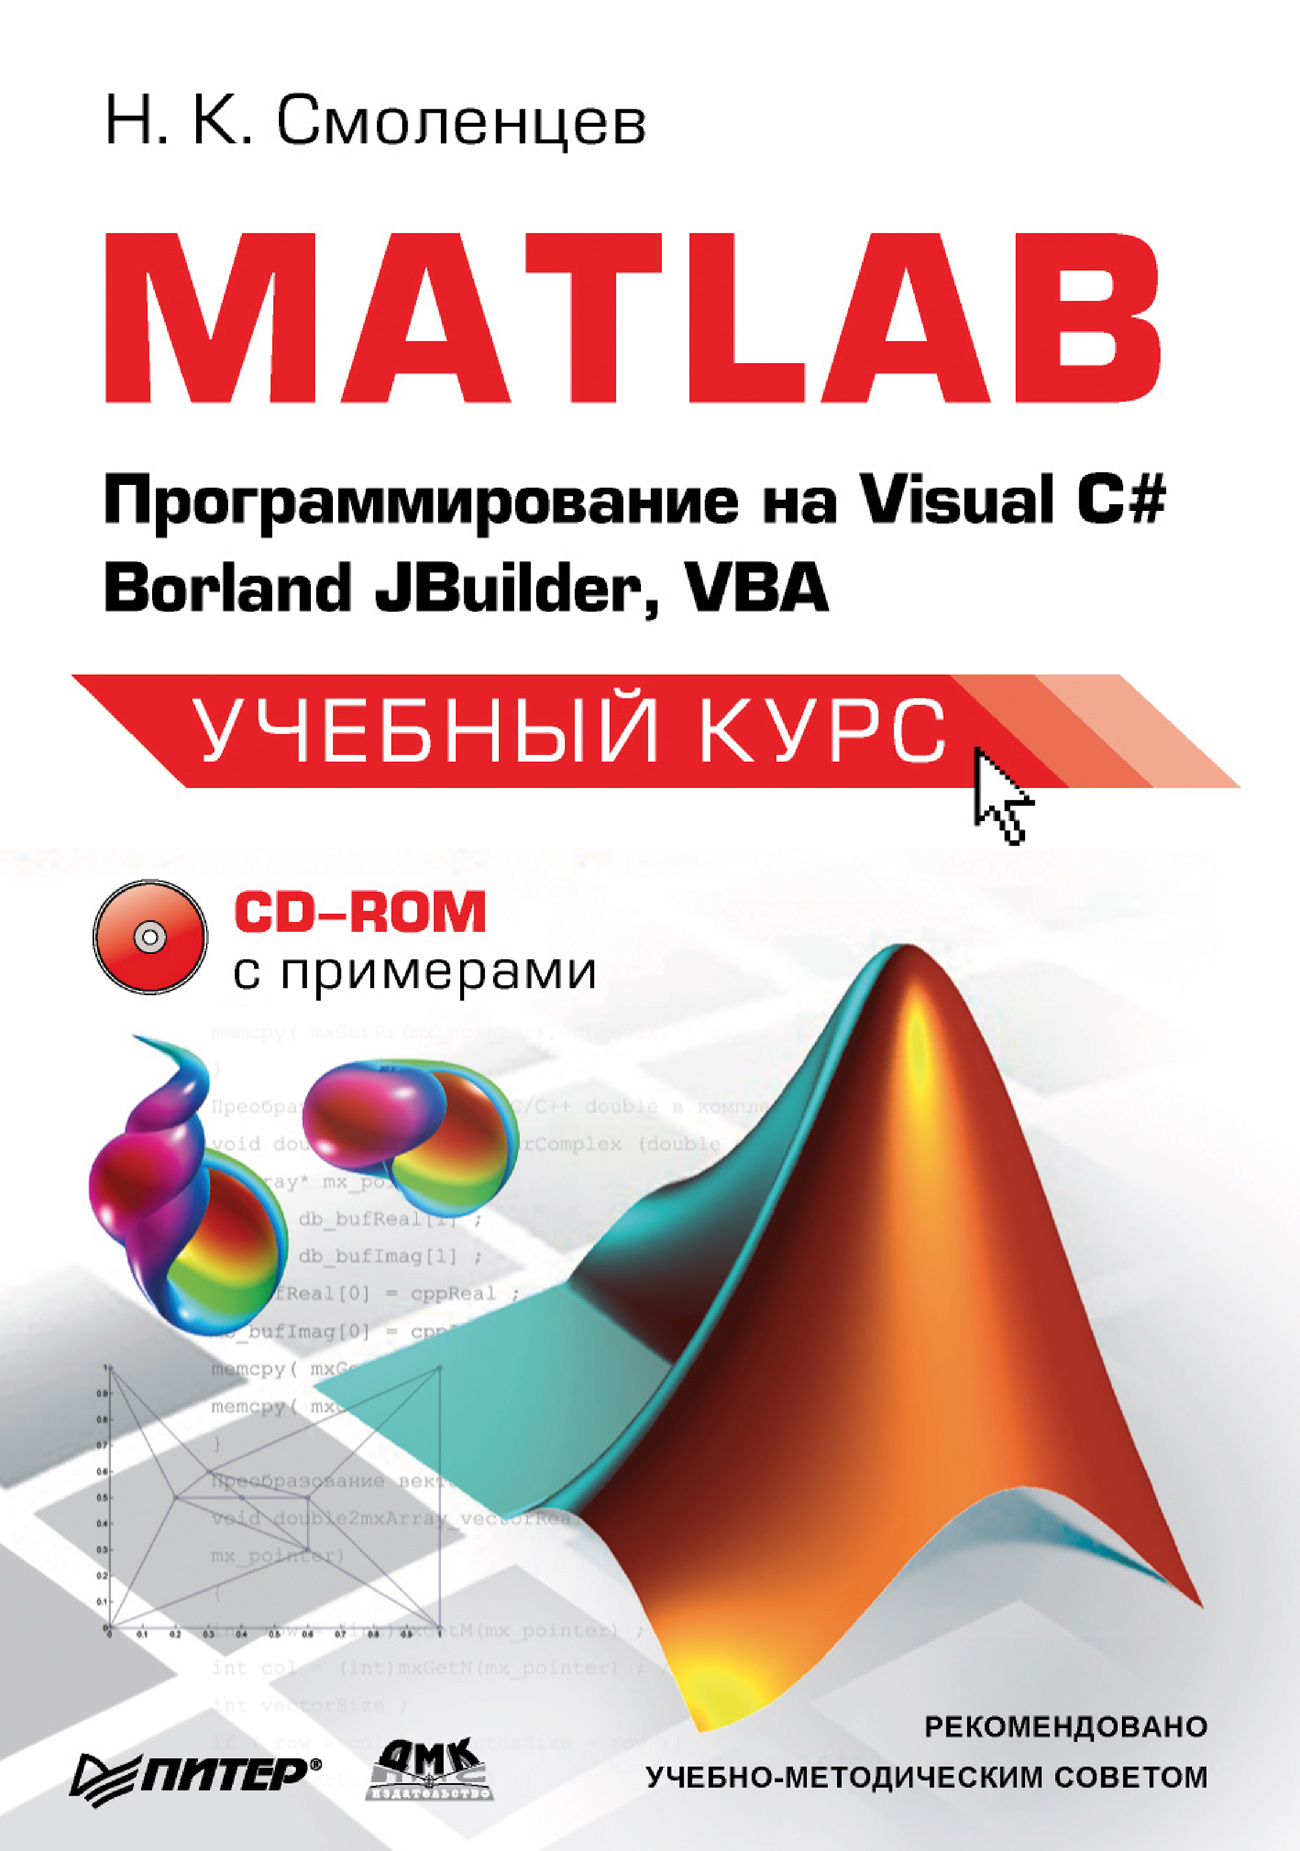 Николай Смоленцев «MATLAB: Программирование на Visual С#, Borland JBuilder, VBA»